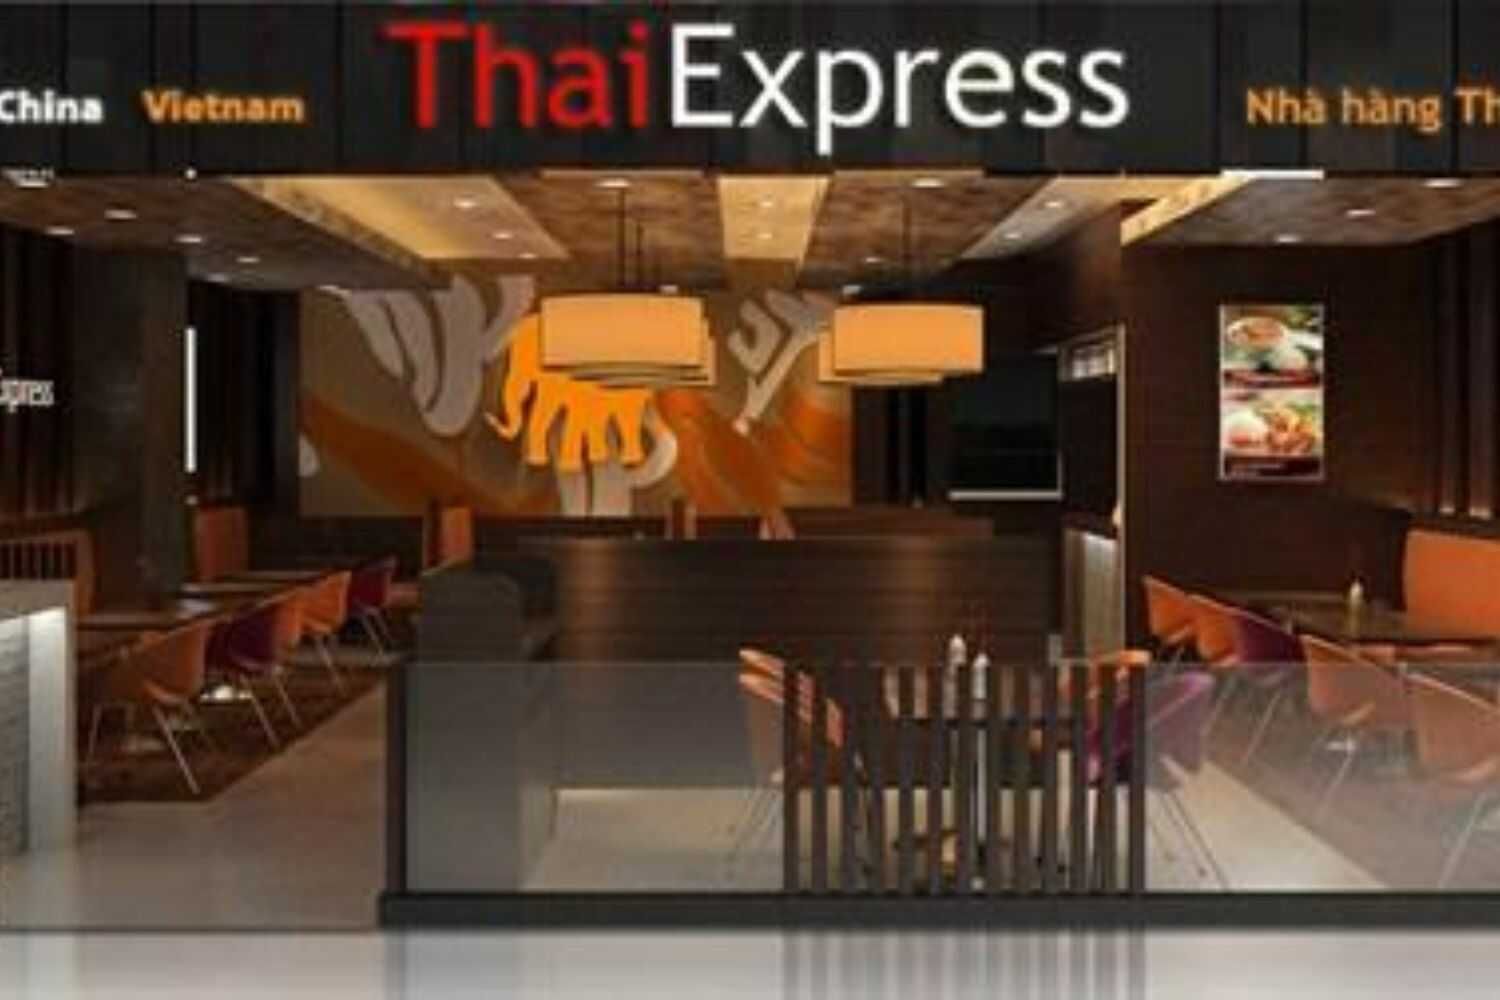 ThaiExpress - TTTM Times City